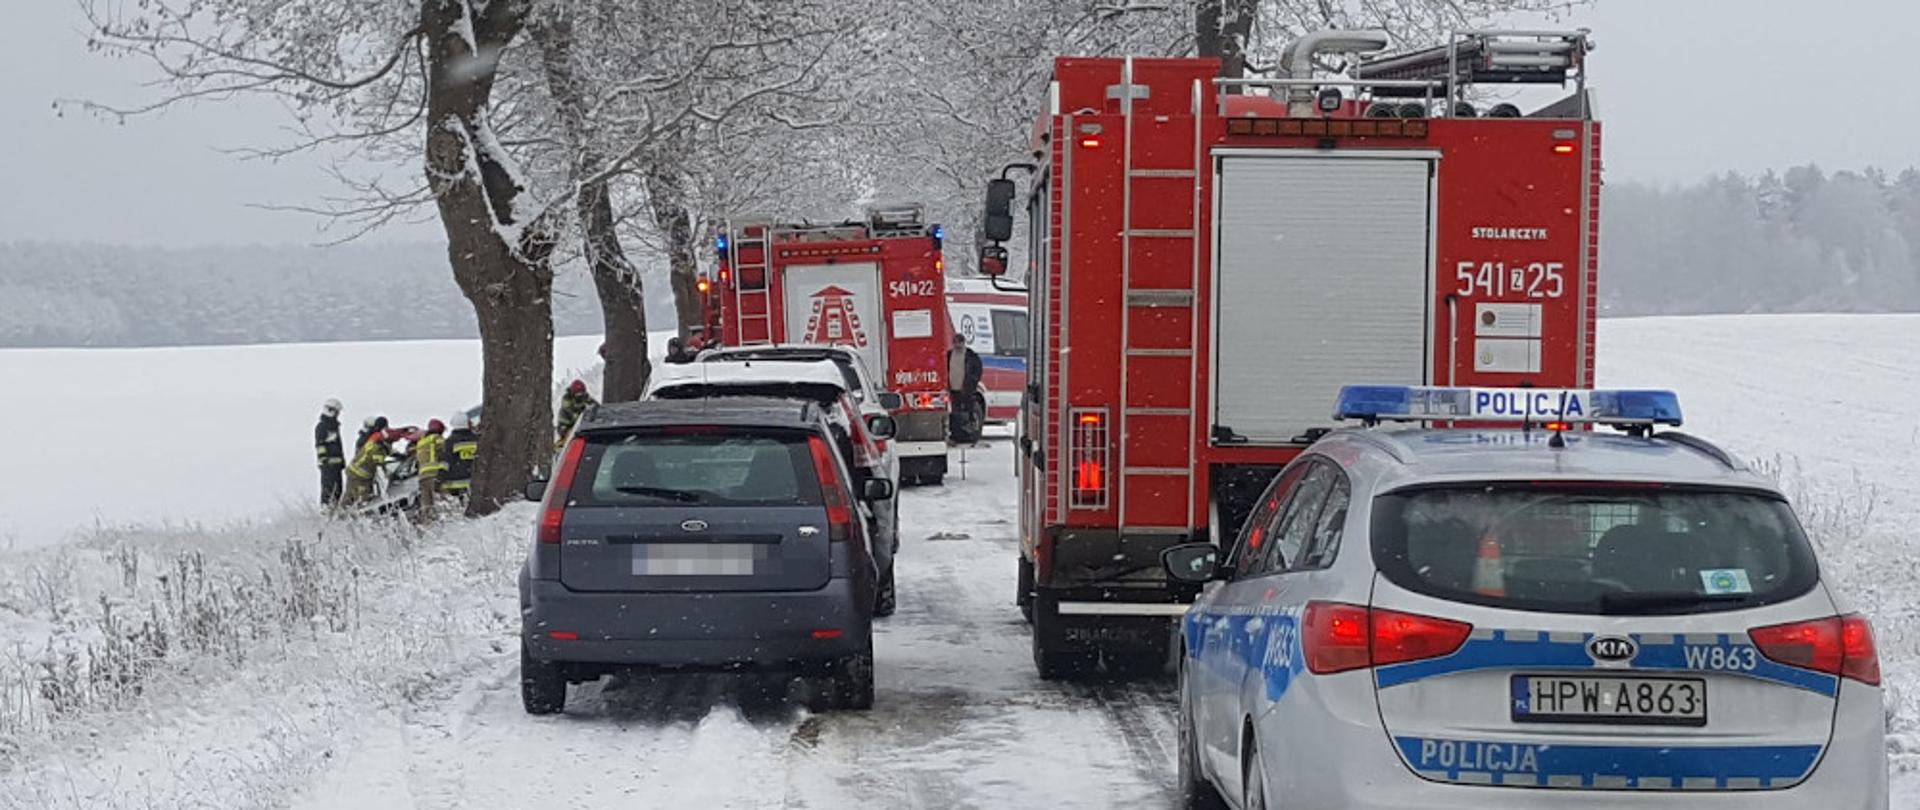 Wypadek samochodu osobowego - samochody ratowniczo-gaśnicze oraz Policji stoją na jezdni